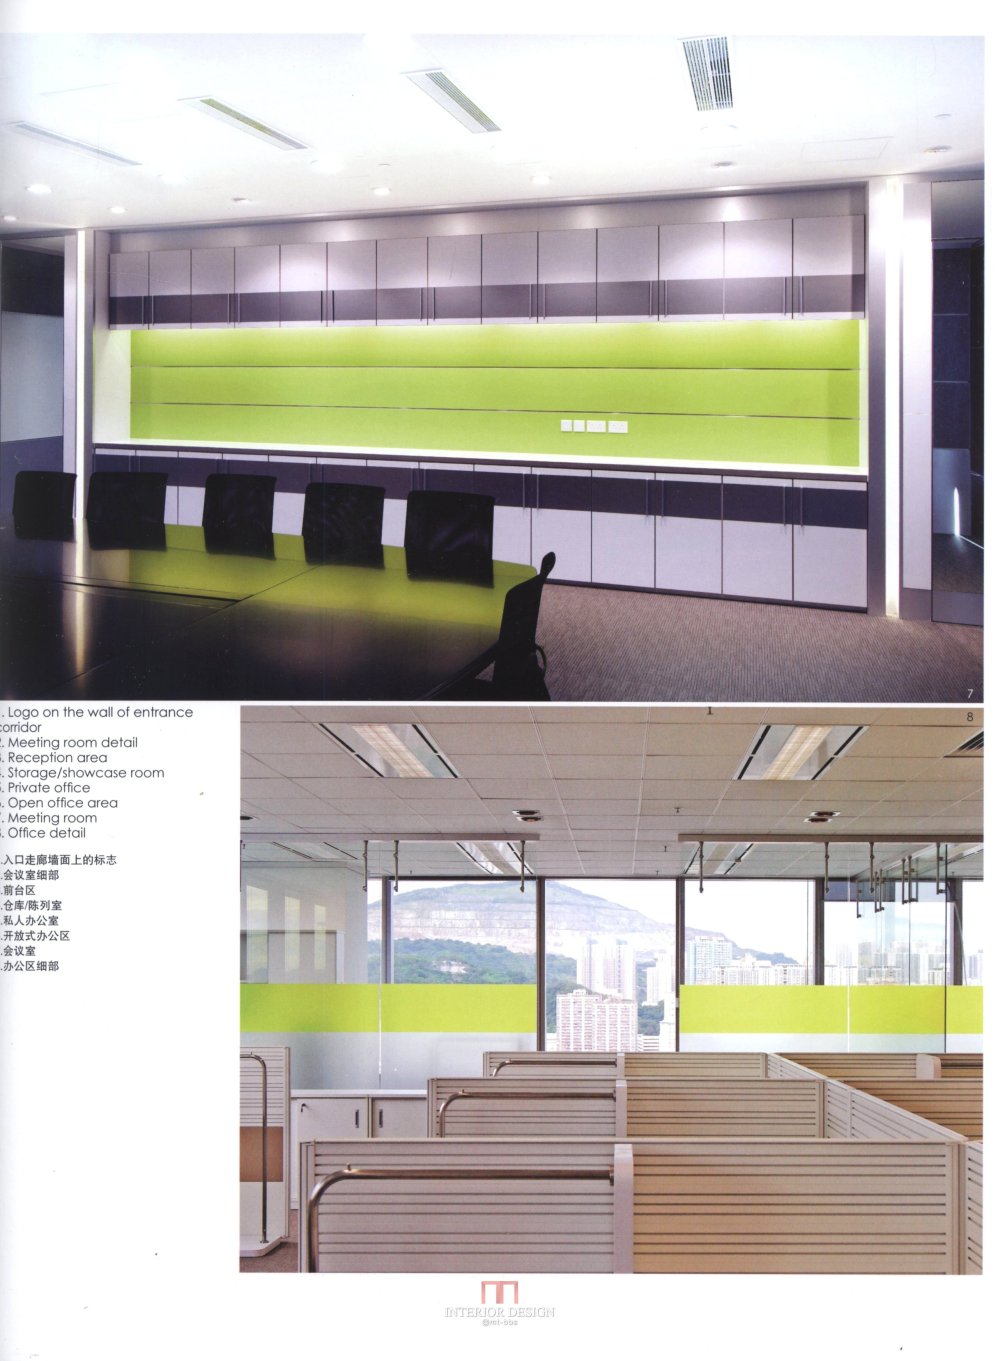 新型办公空间 扫描书_kobi 0186.jpg